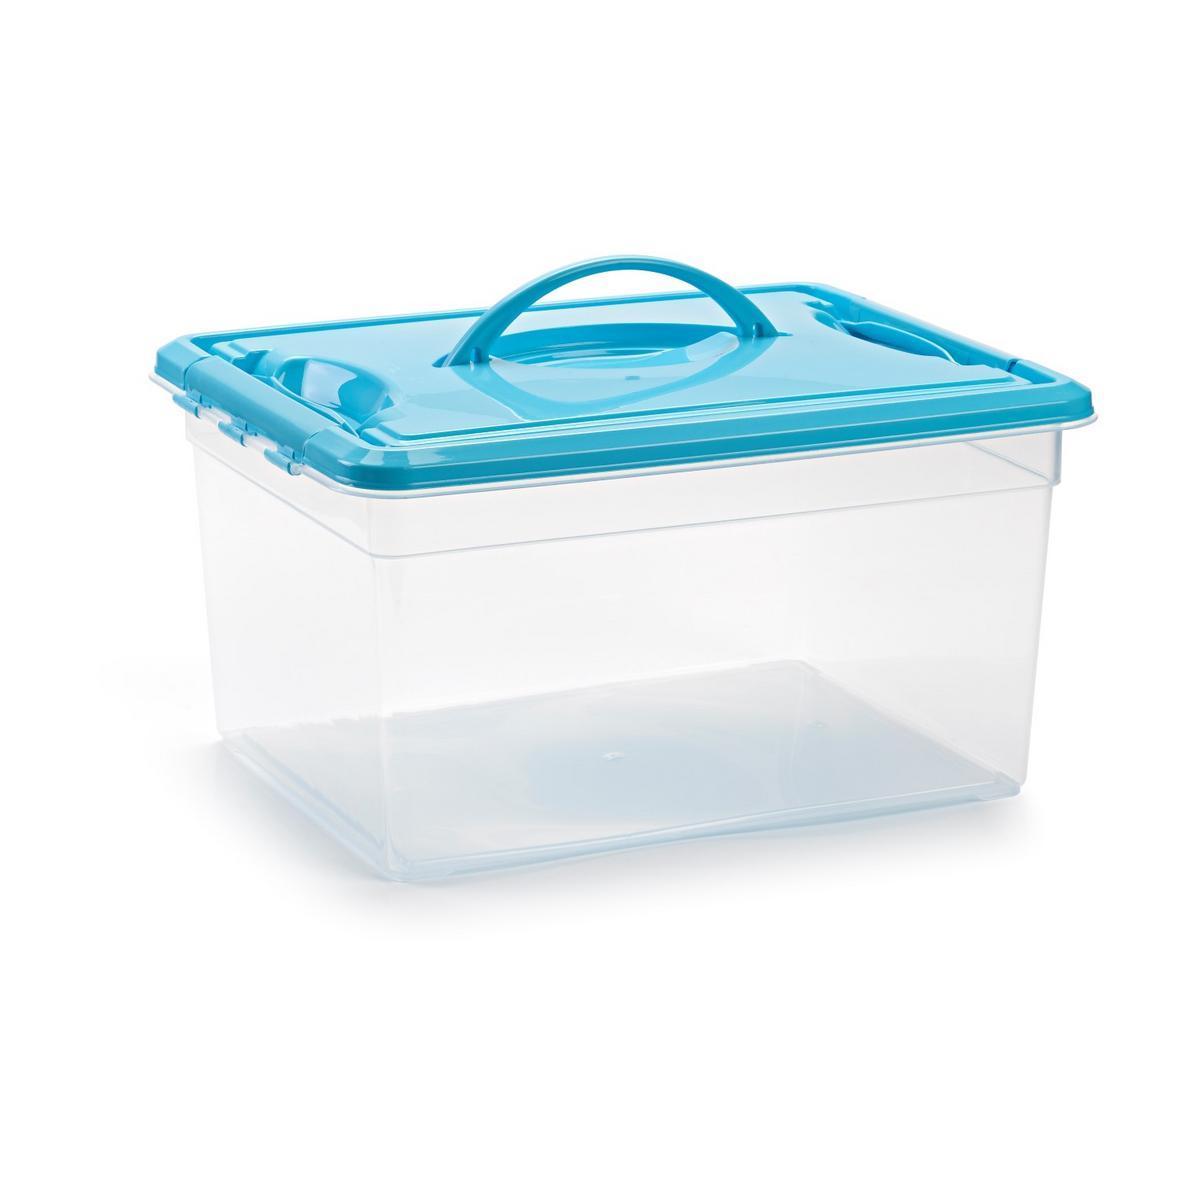 Boîte de rangement avec poignées - Plastique - 34 x 27 x H 18 cm - Turquoise, rose ou gris